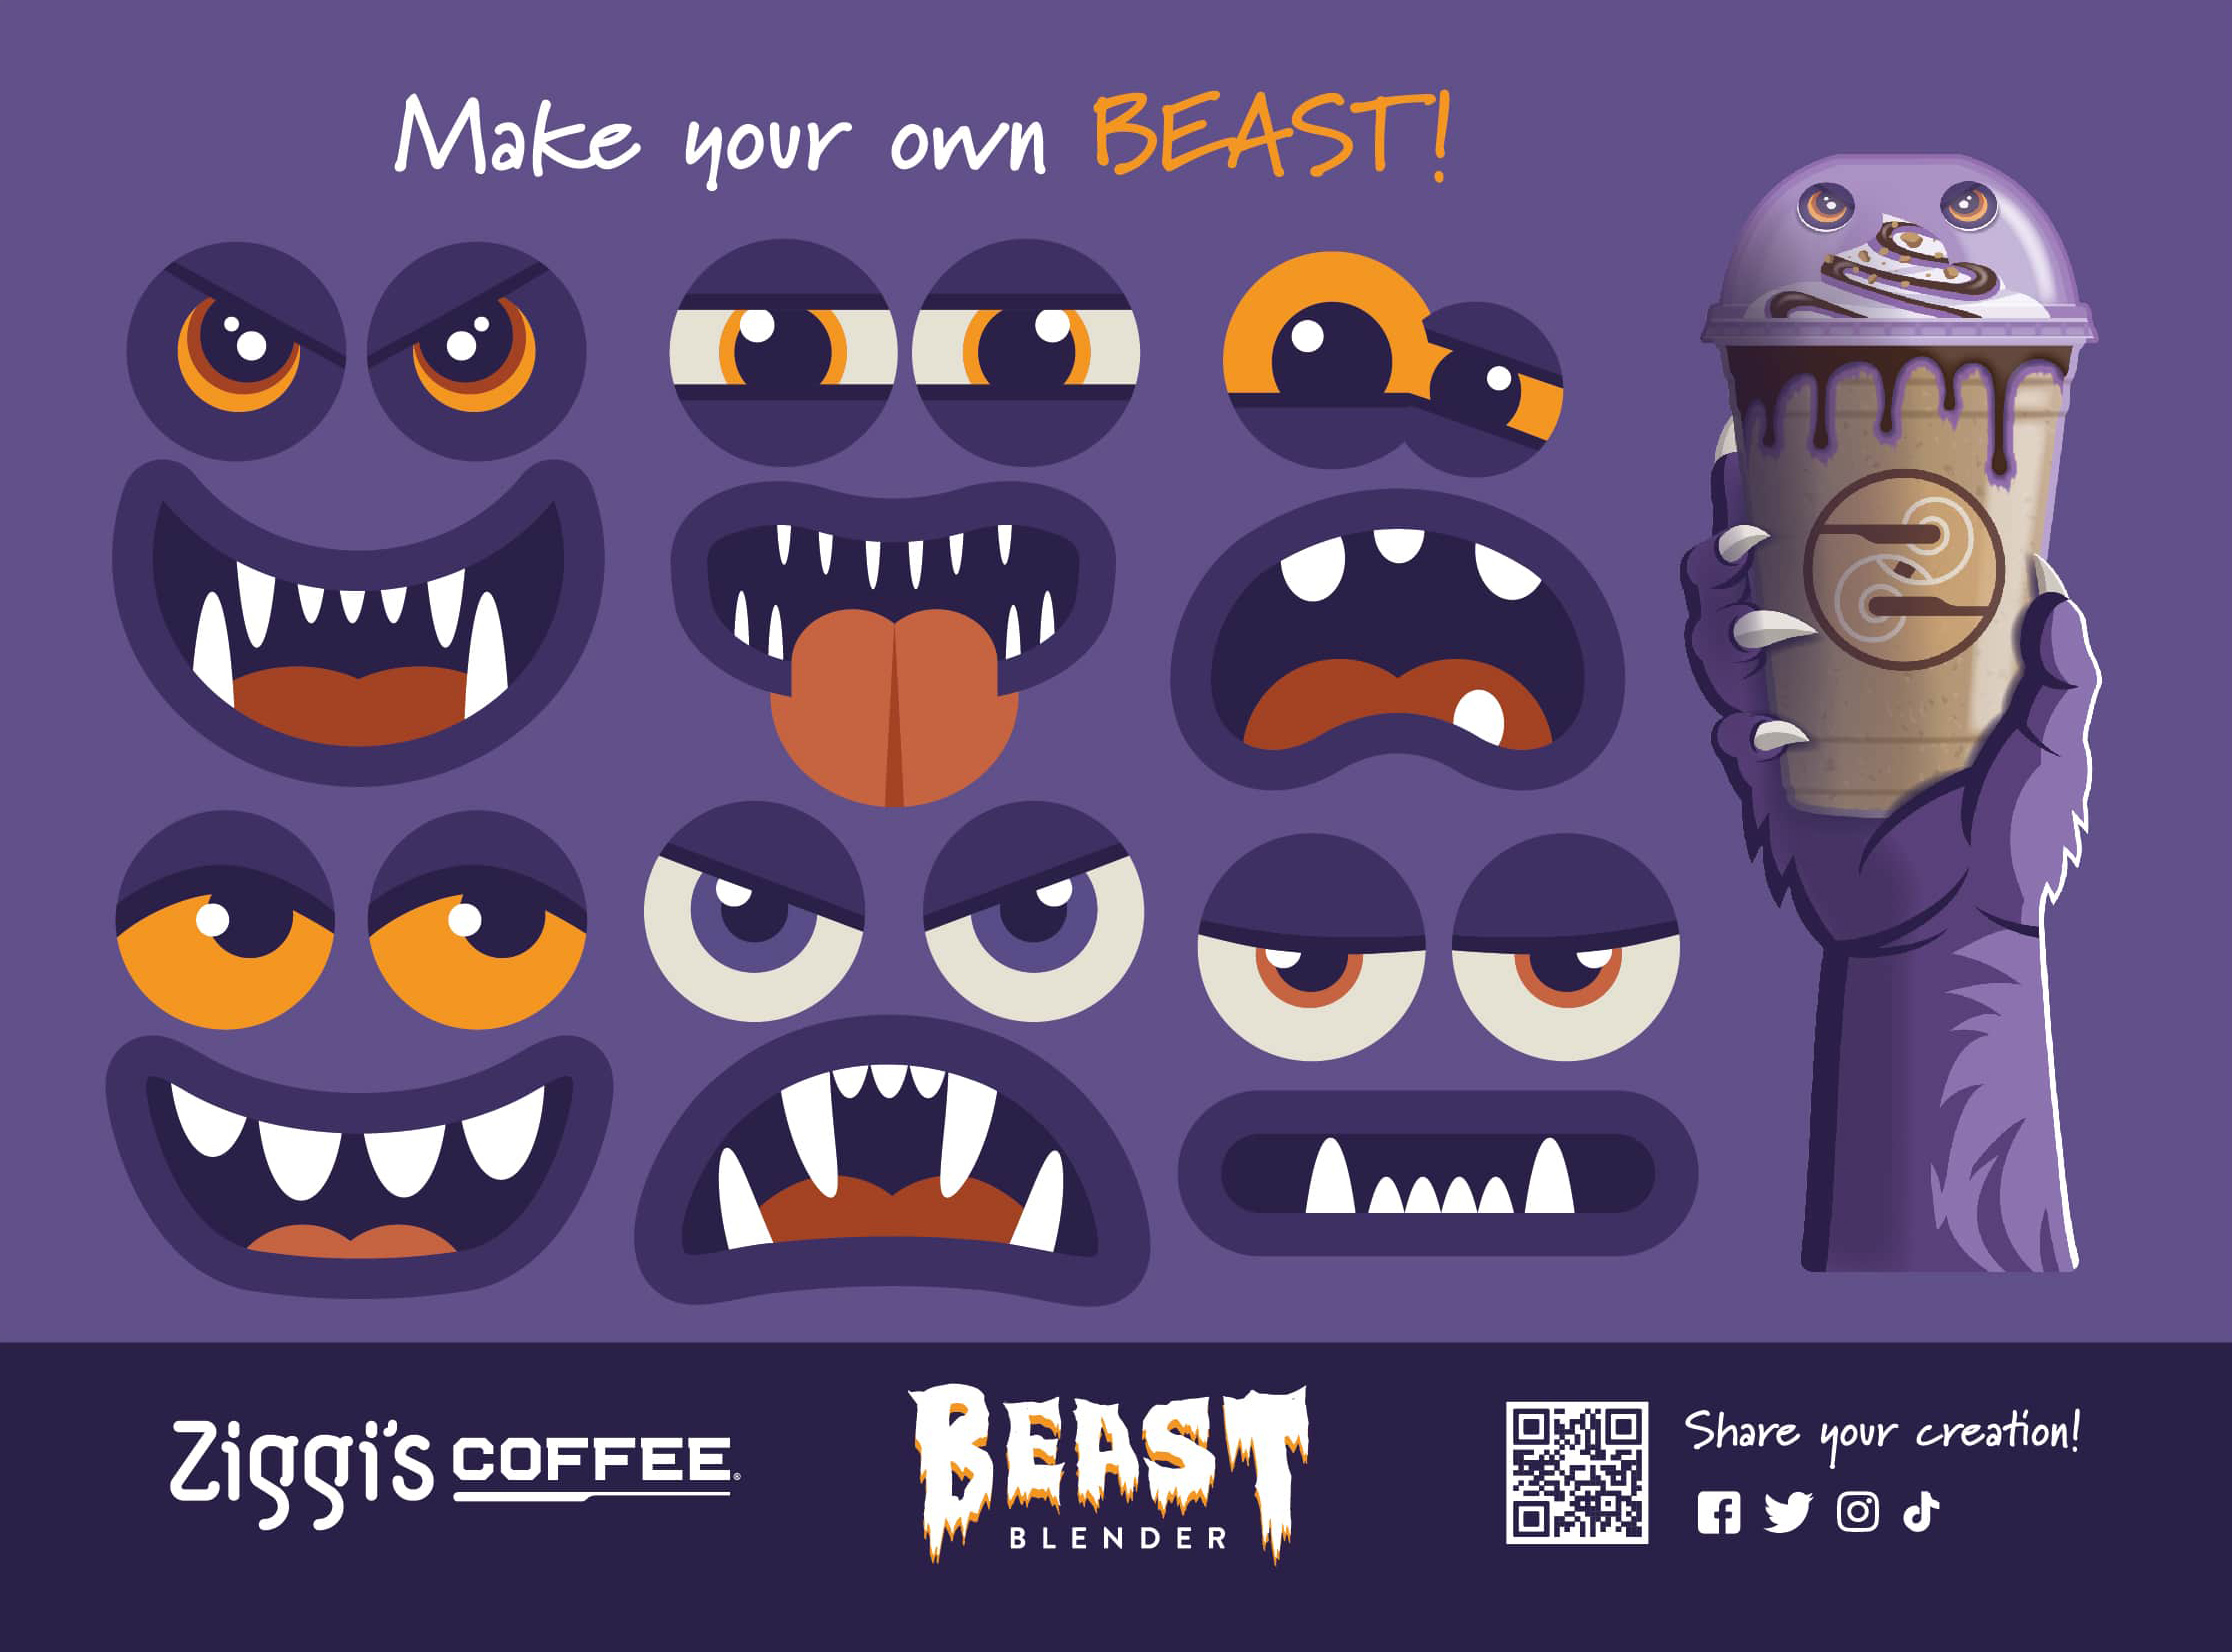 Blog: The Beast Blender Returns to Ziggi's